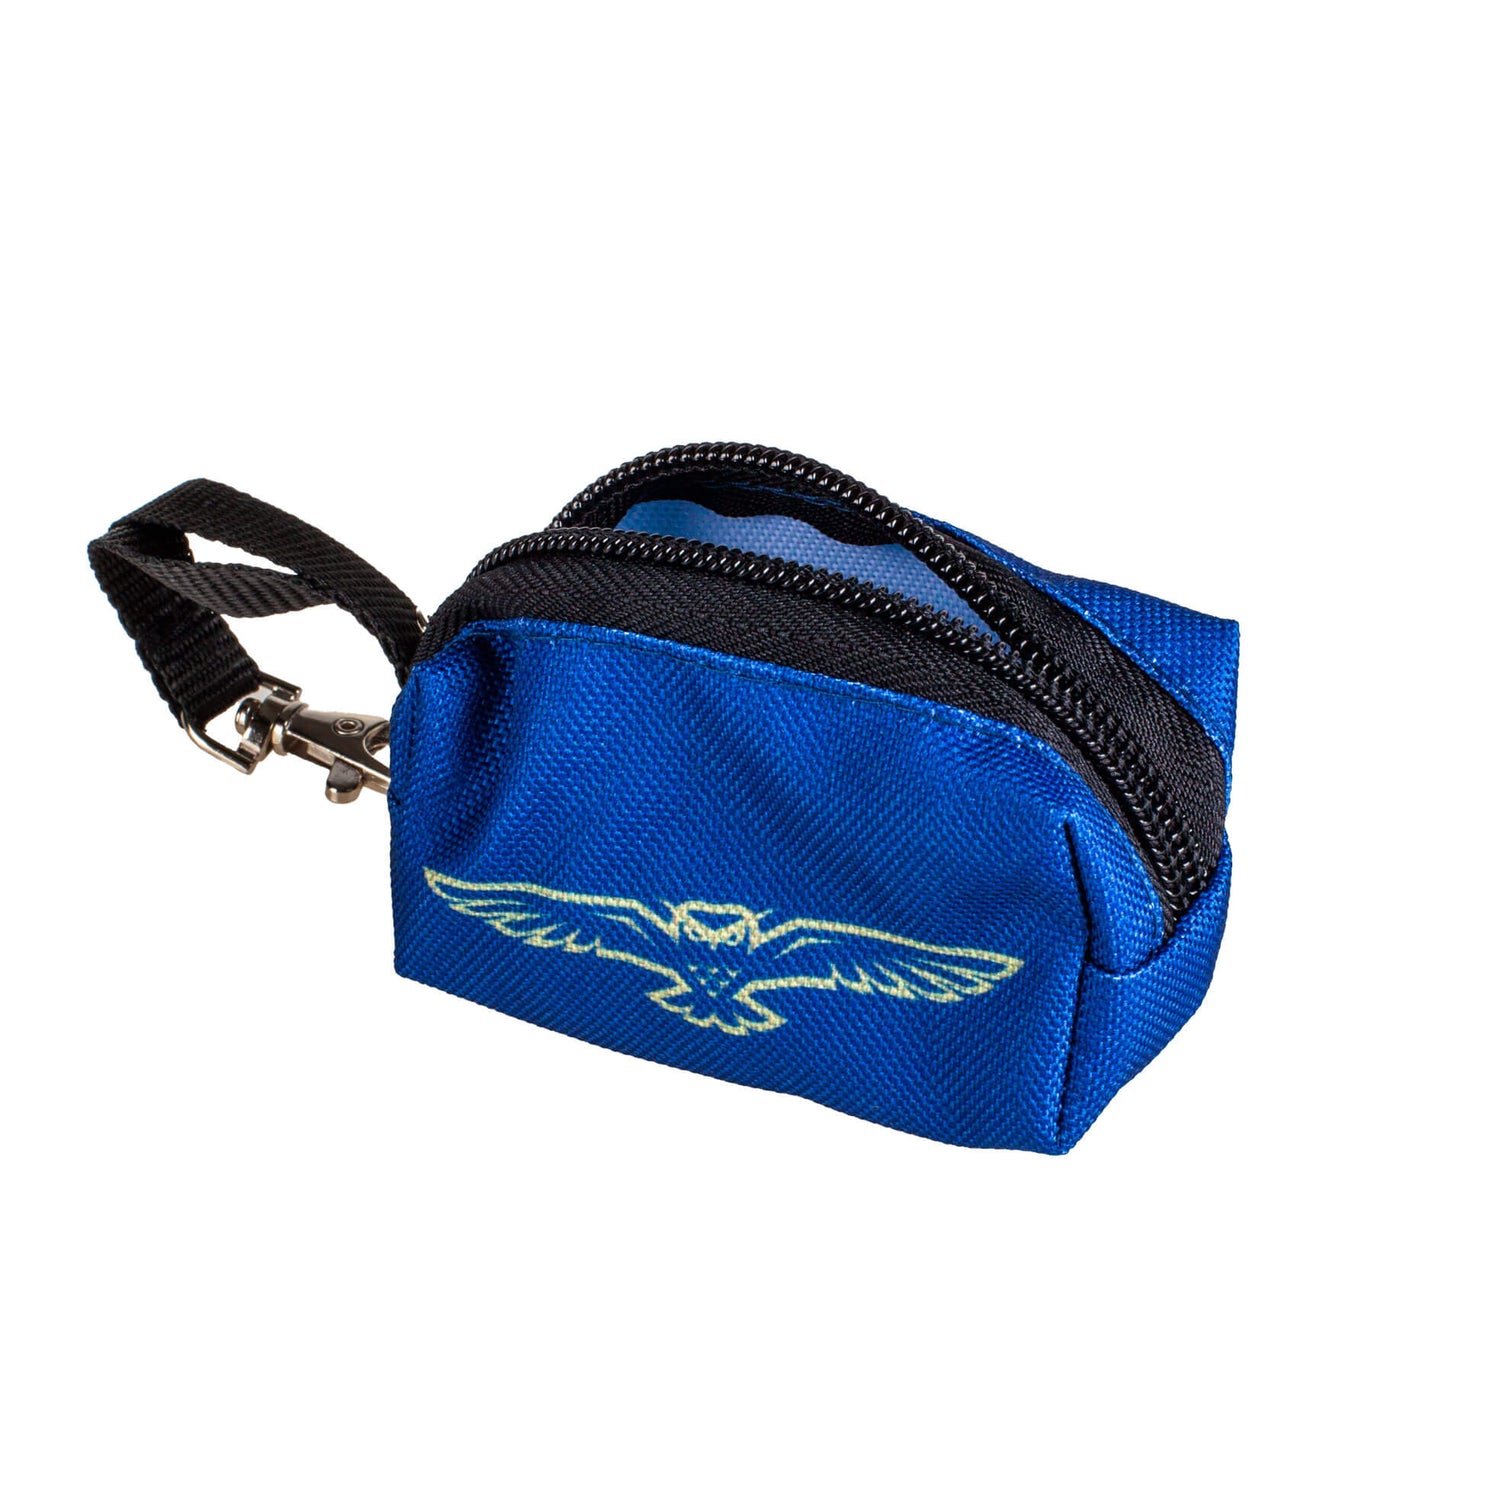 Huuhkajat 2.0 Storage Bag for Dog Poop Bags, Navy Blue